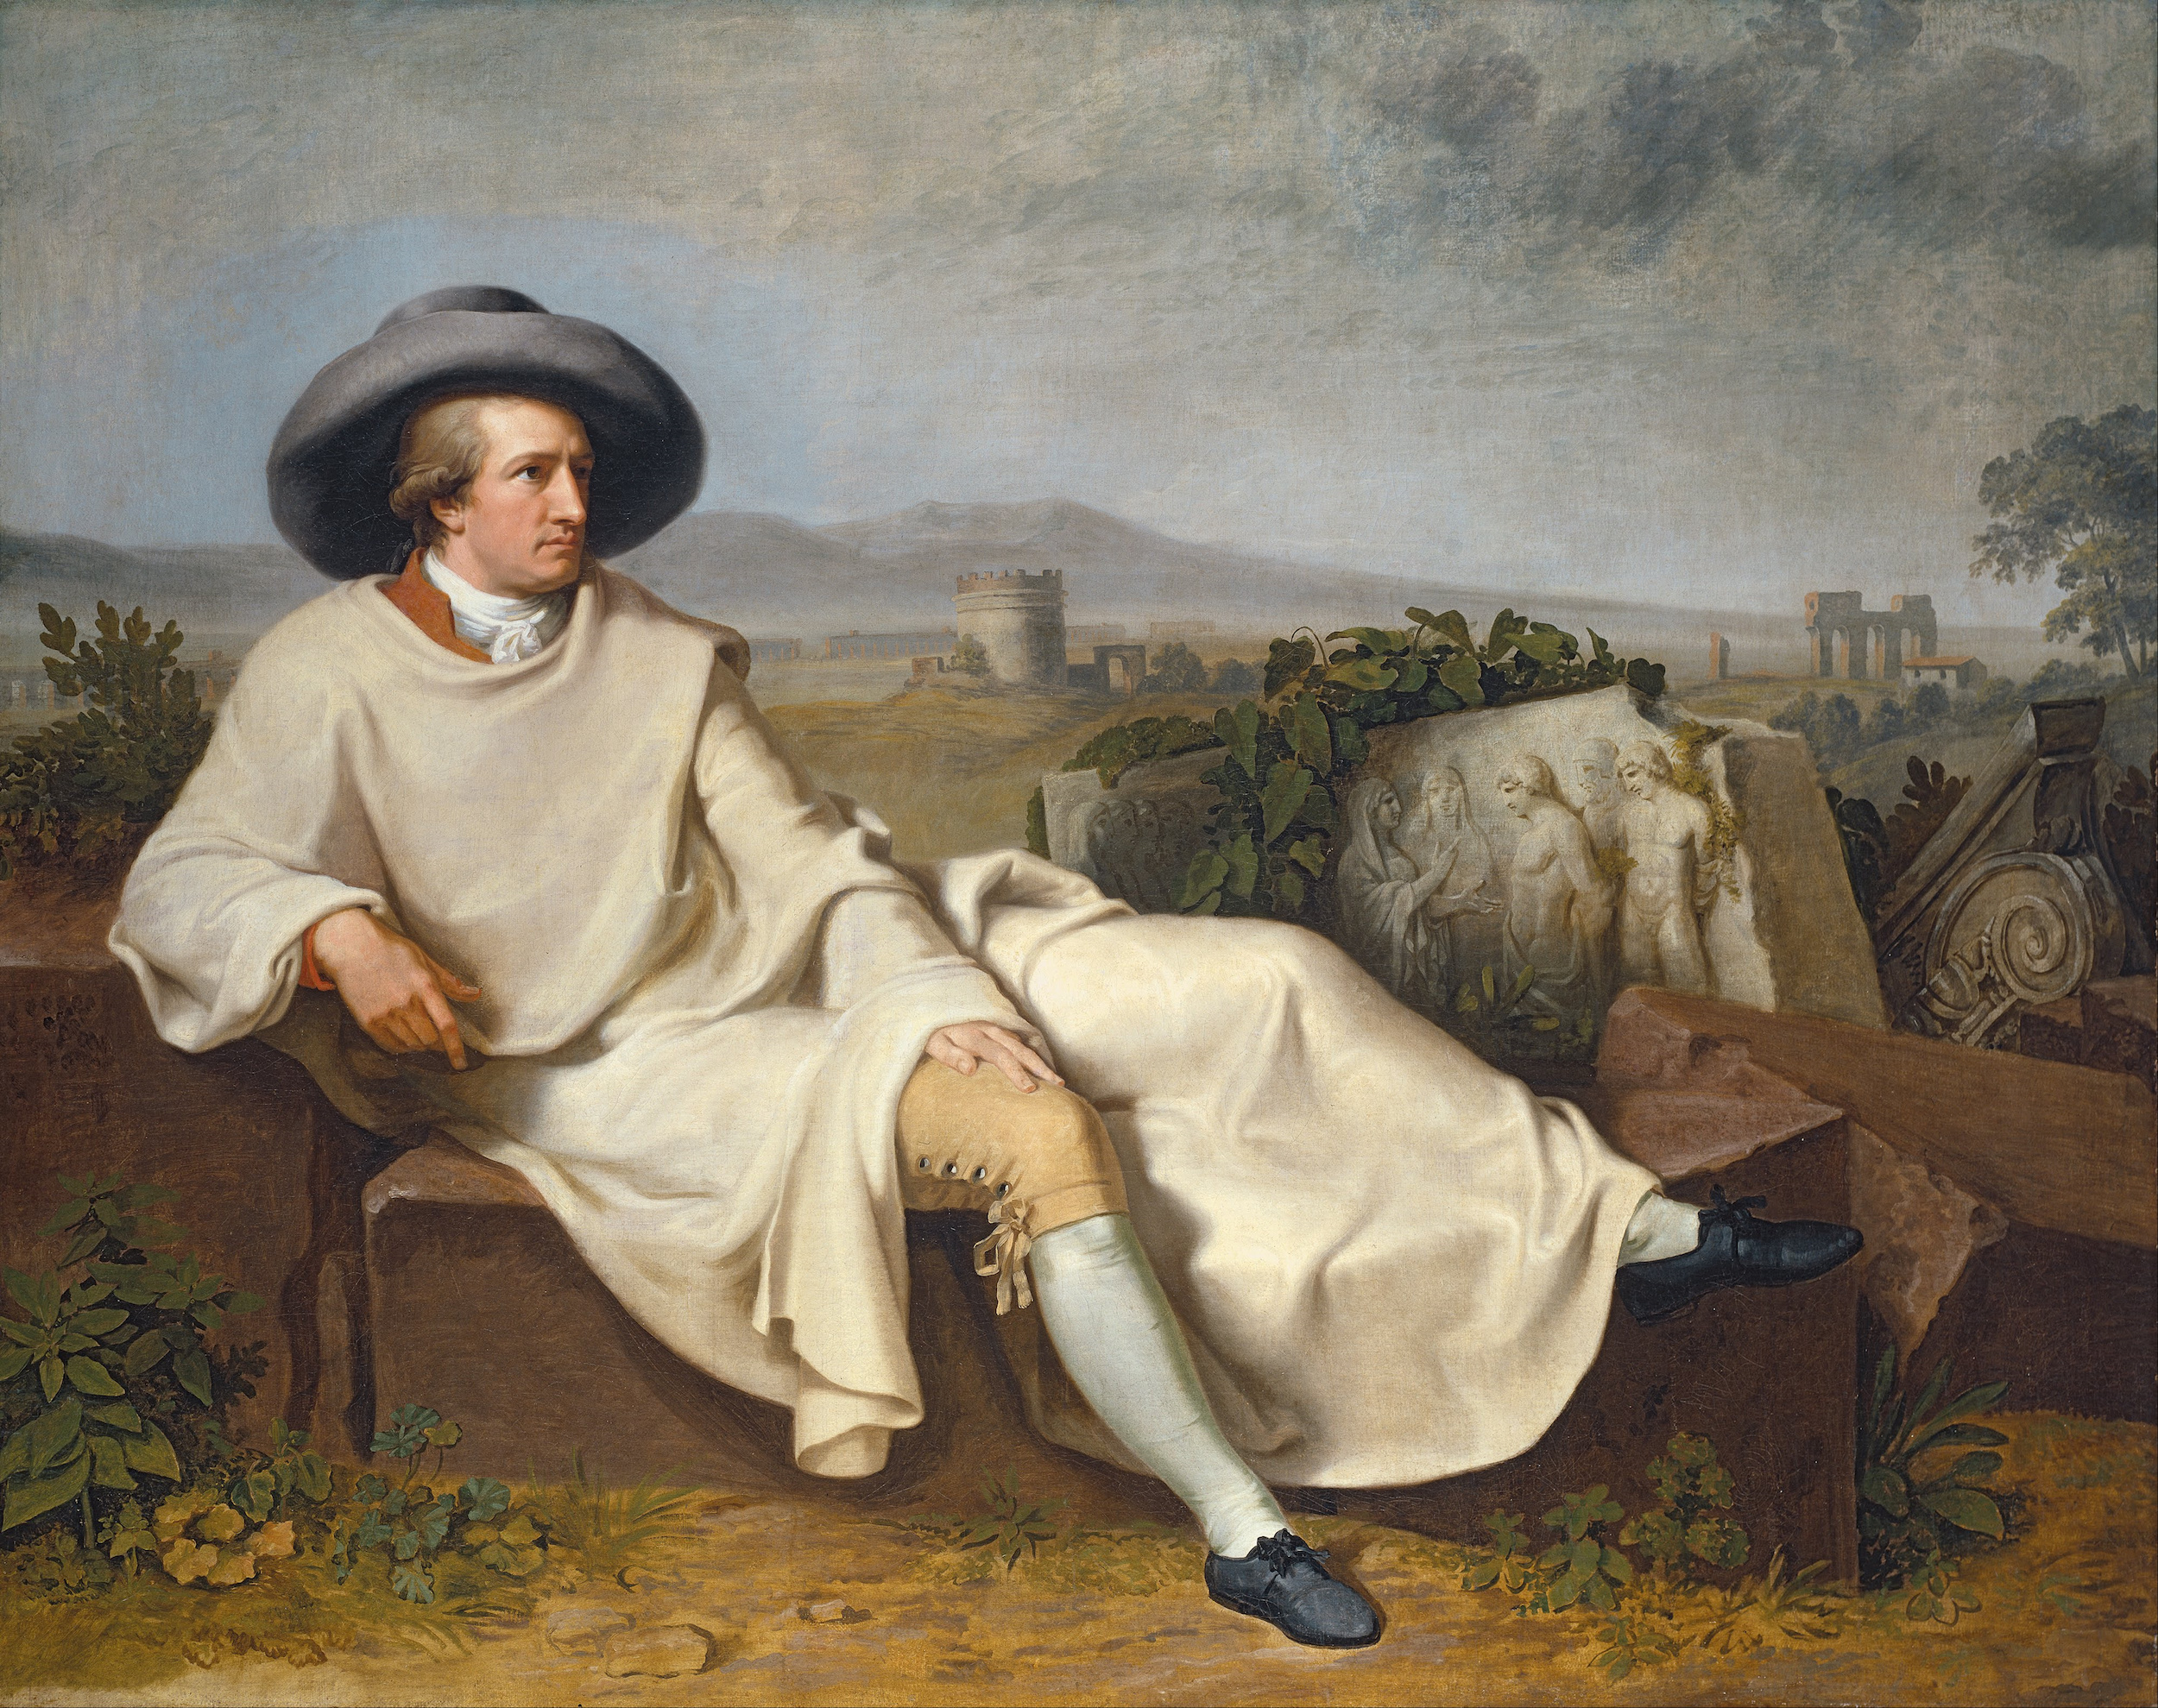 Goethe w Campagna by Johann Heinrich Wilhelm Tischbein - 1787 - 164 × 206 cm 